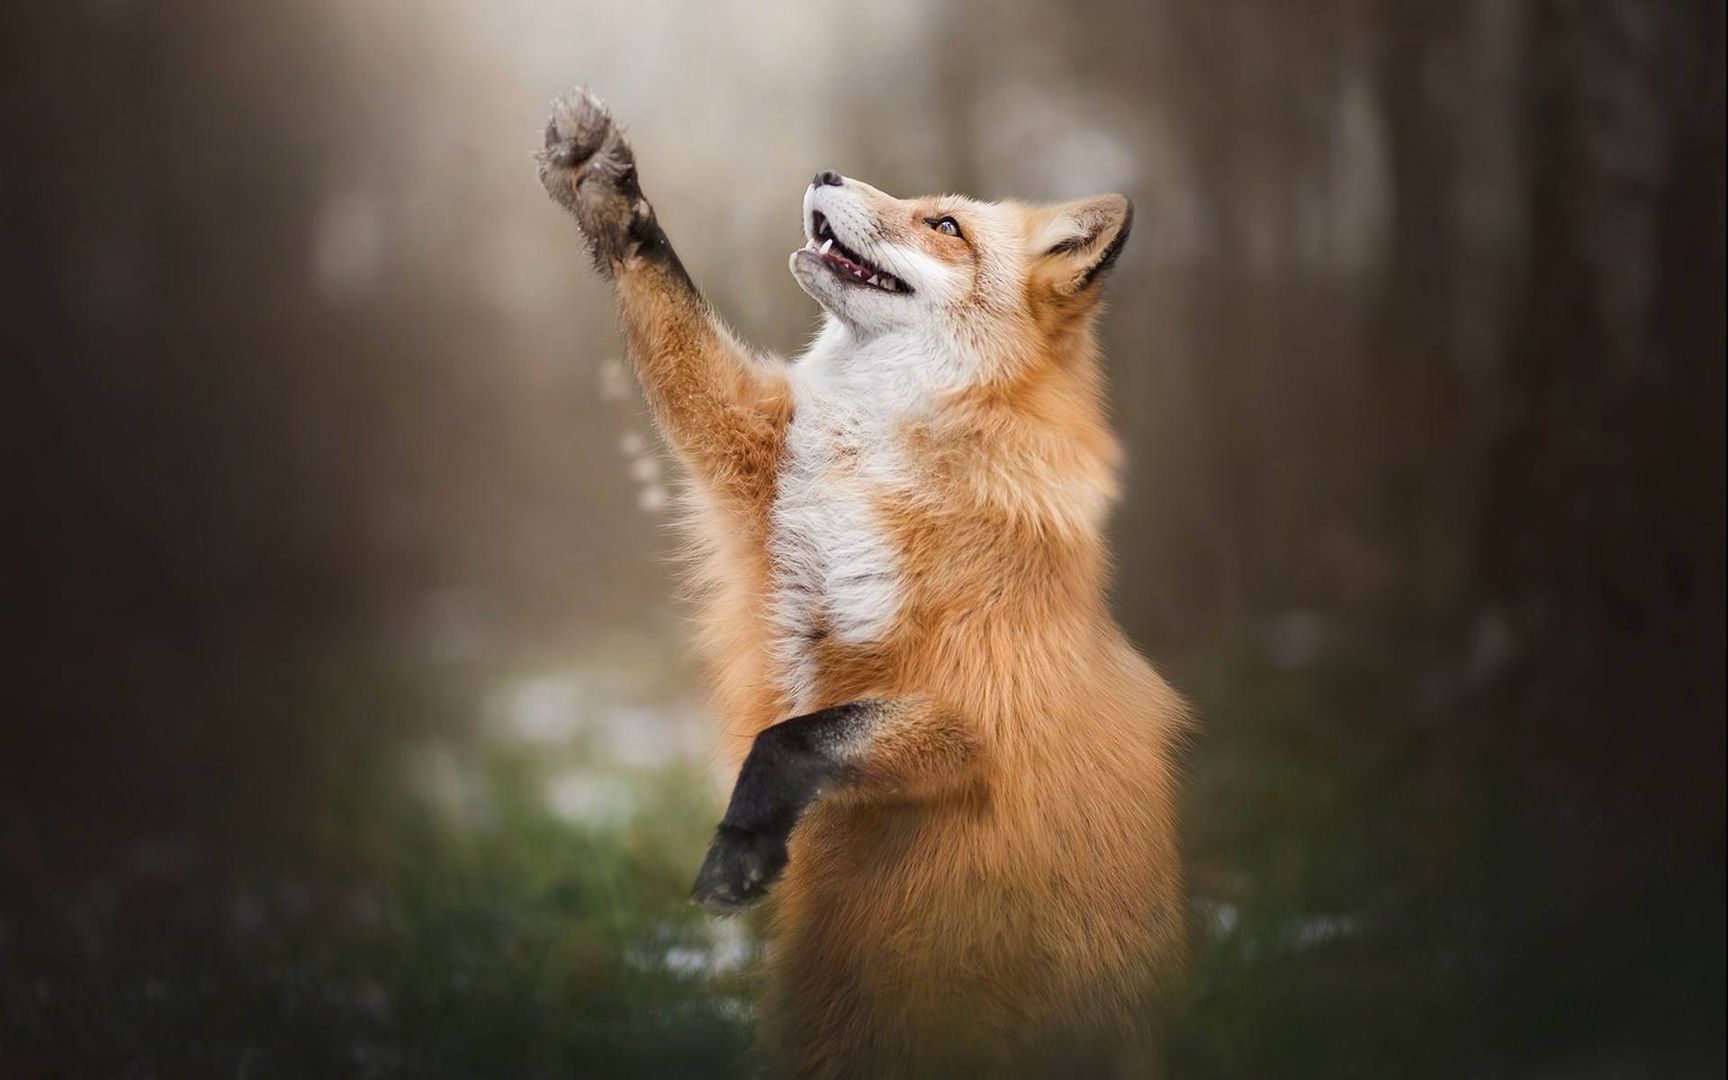 野外嗅觉灵敏的动物狐狸看着挺可爱其实很狡猾